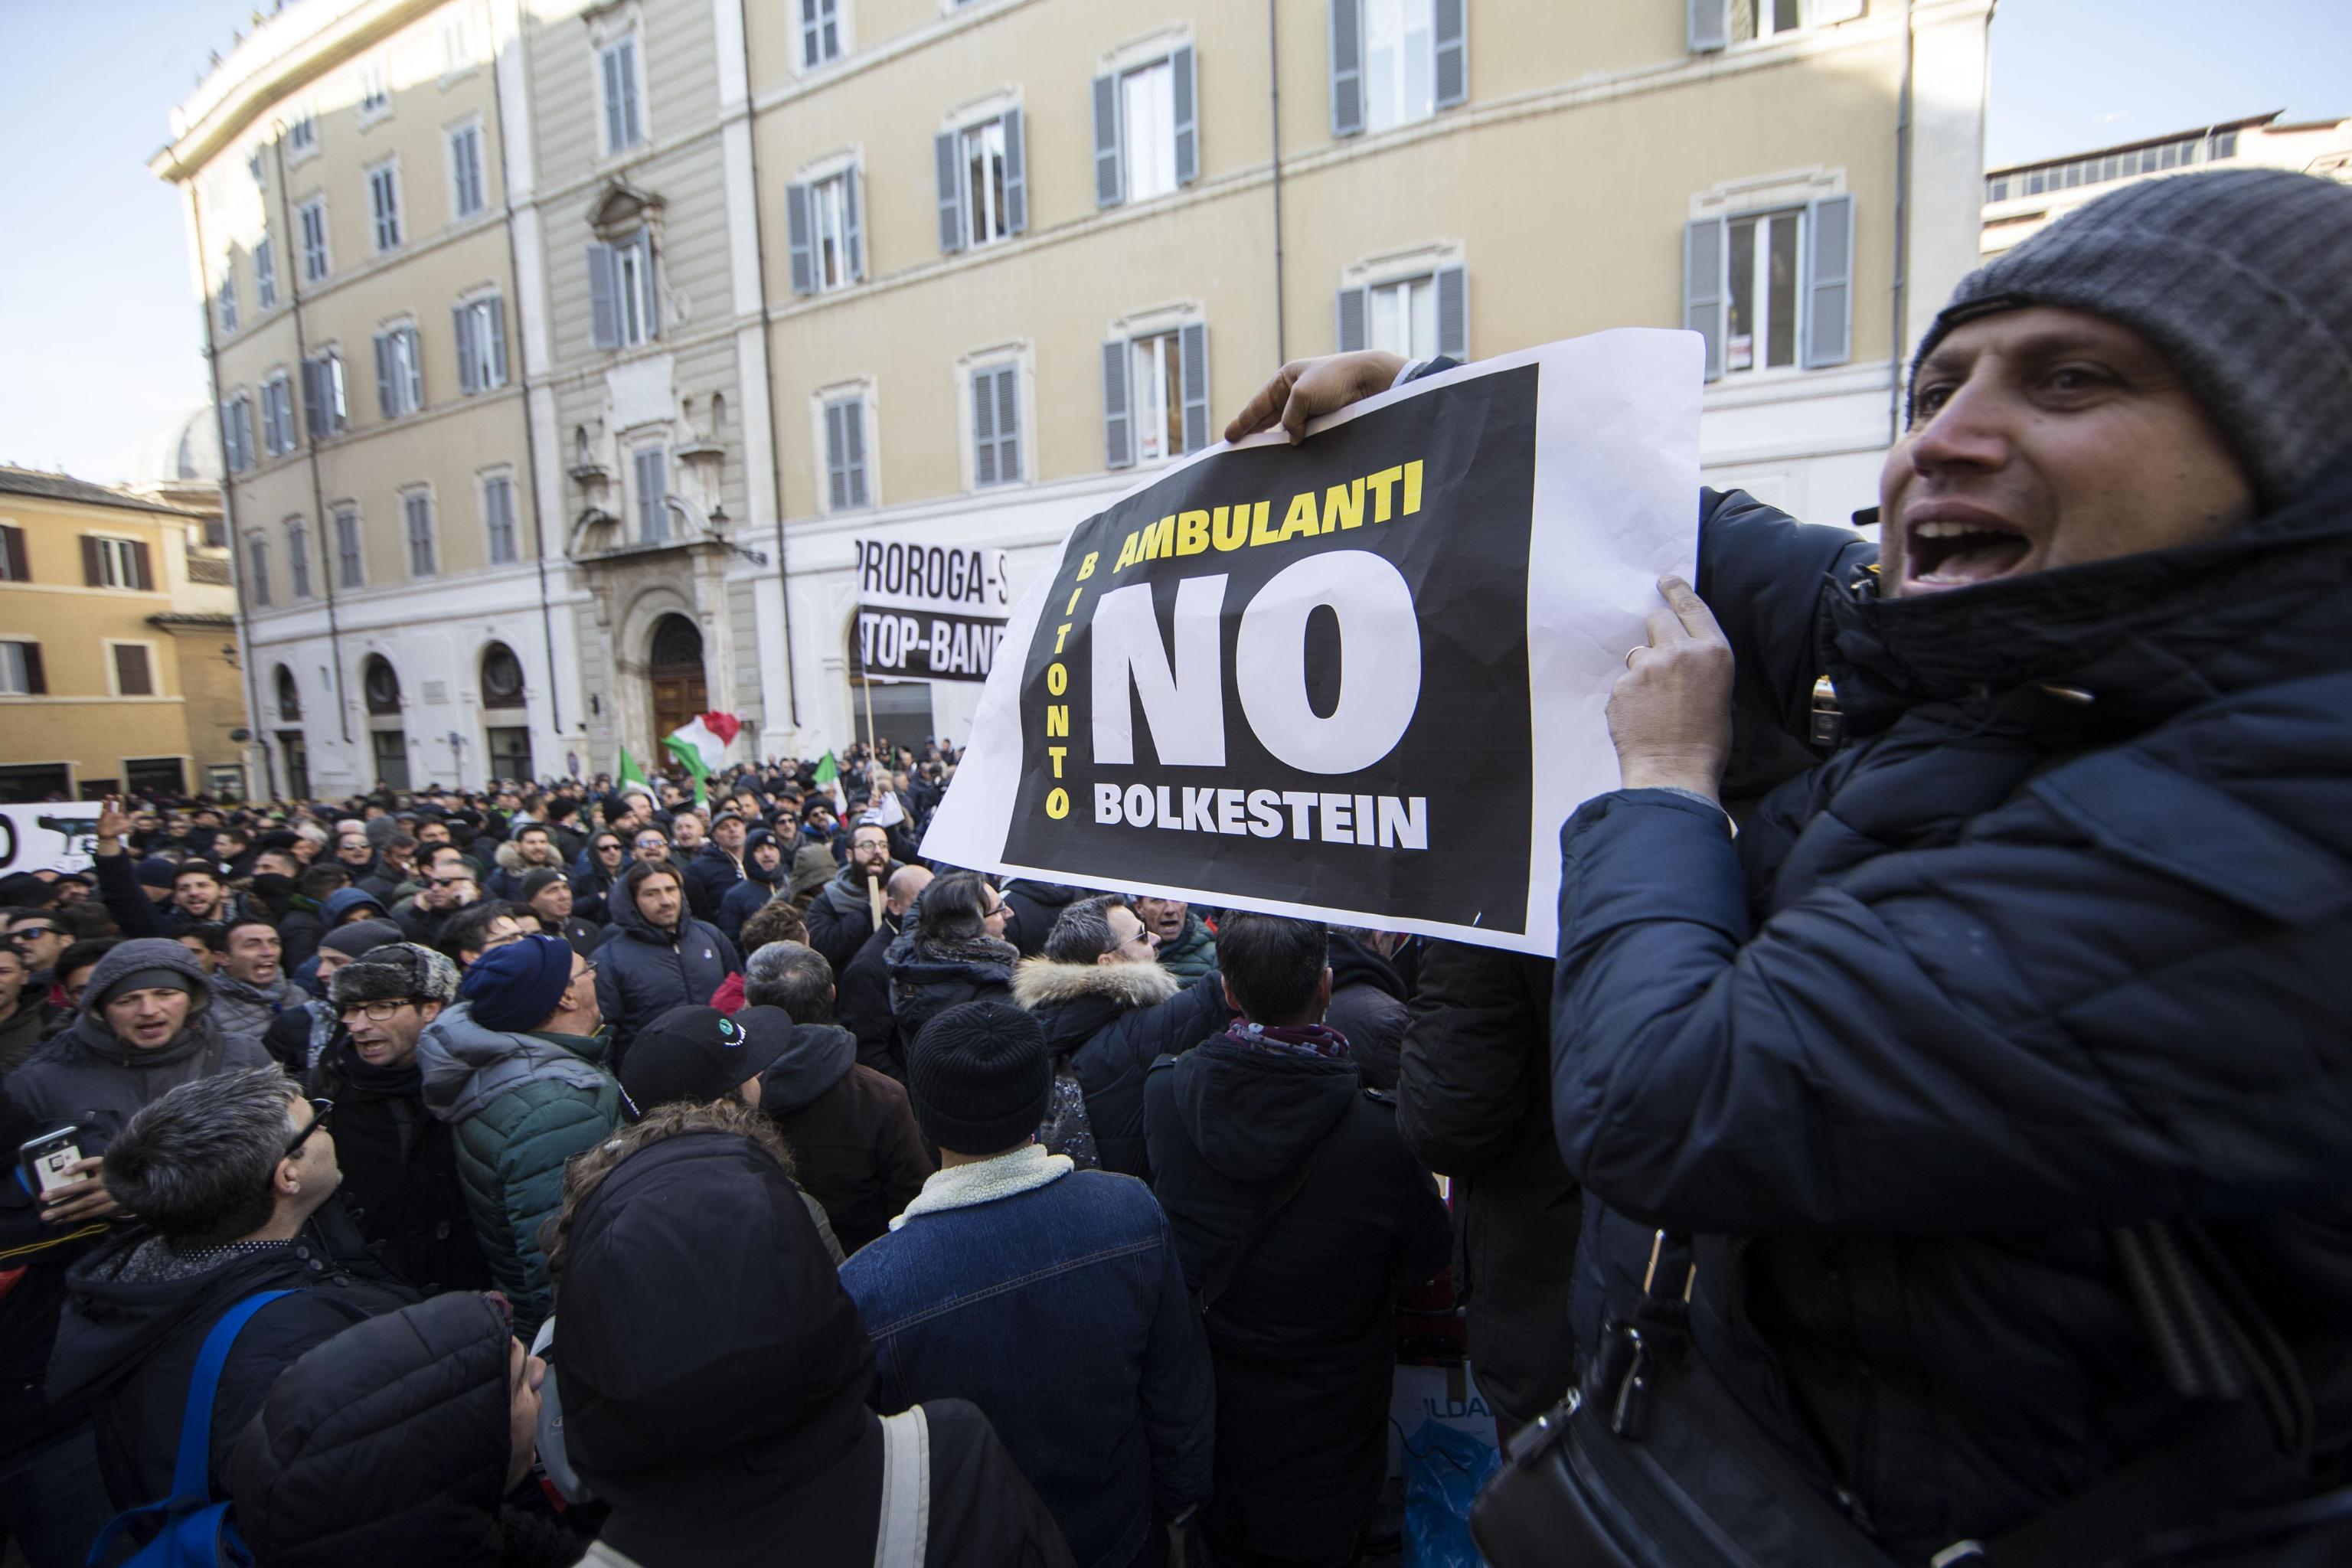 Un momento della manifestazione contro la direttiva Bolkestein a Montecitorio.